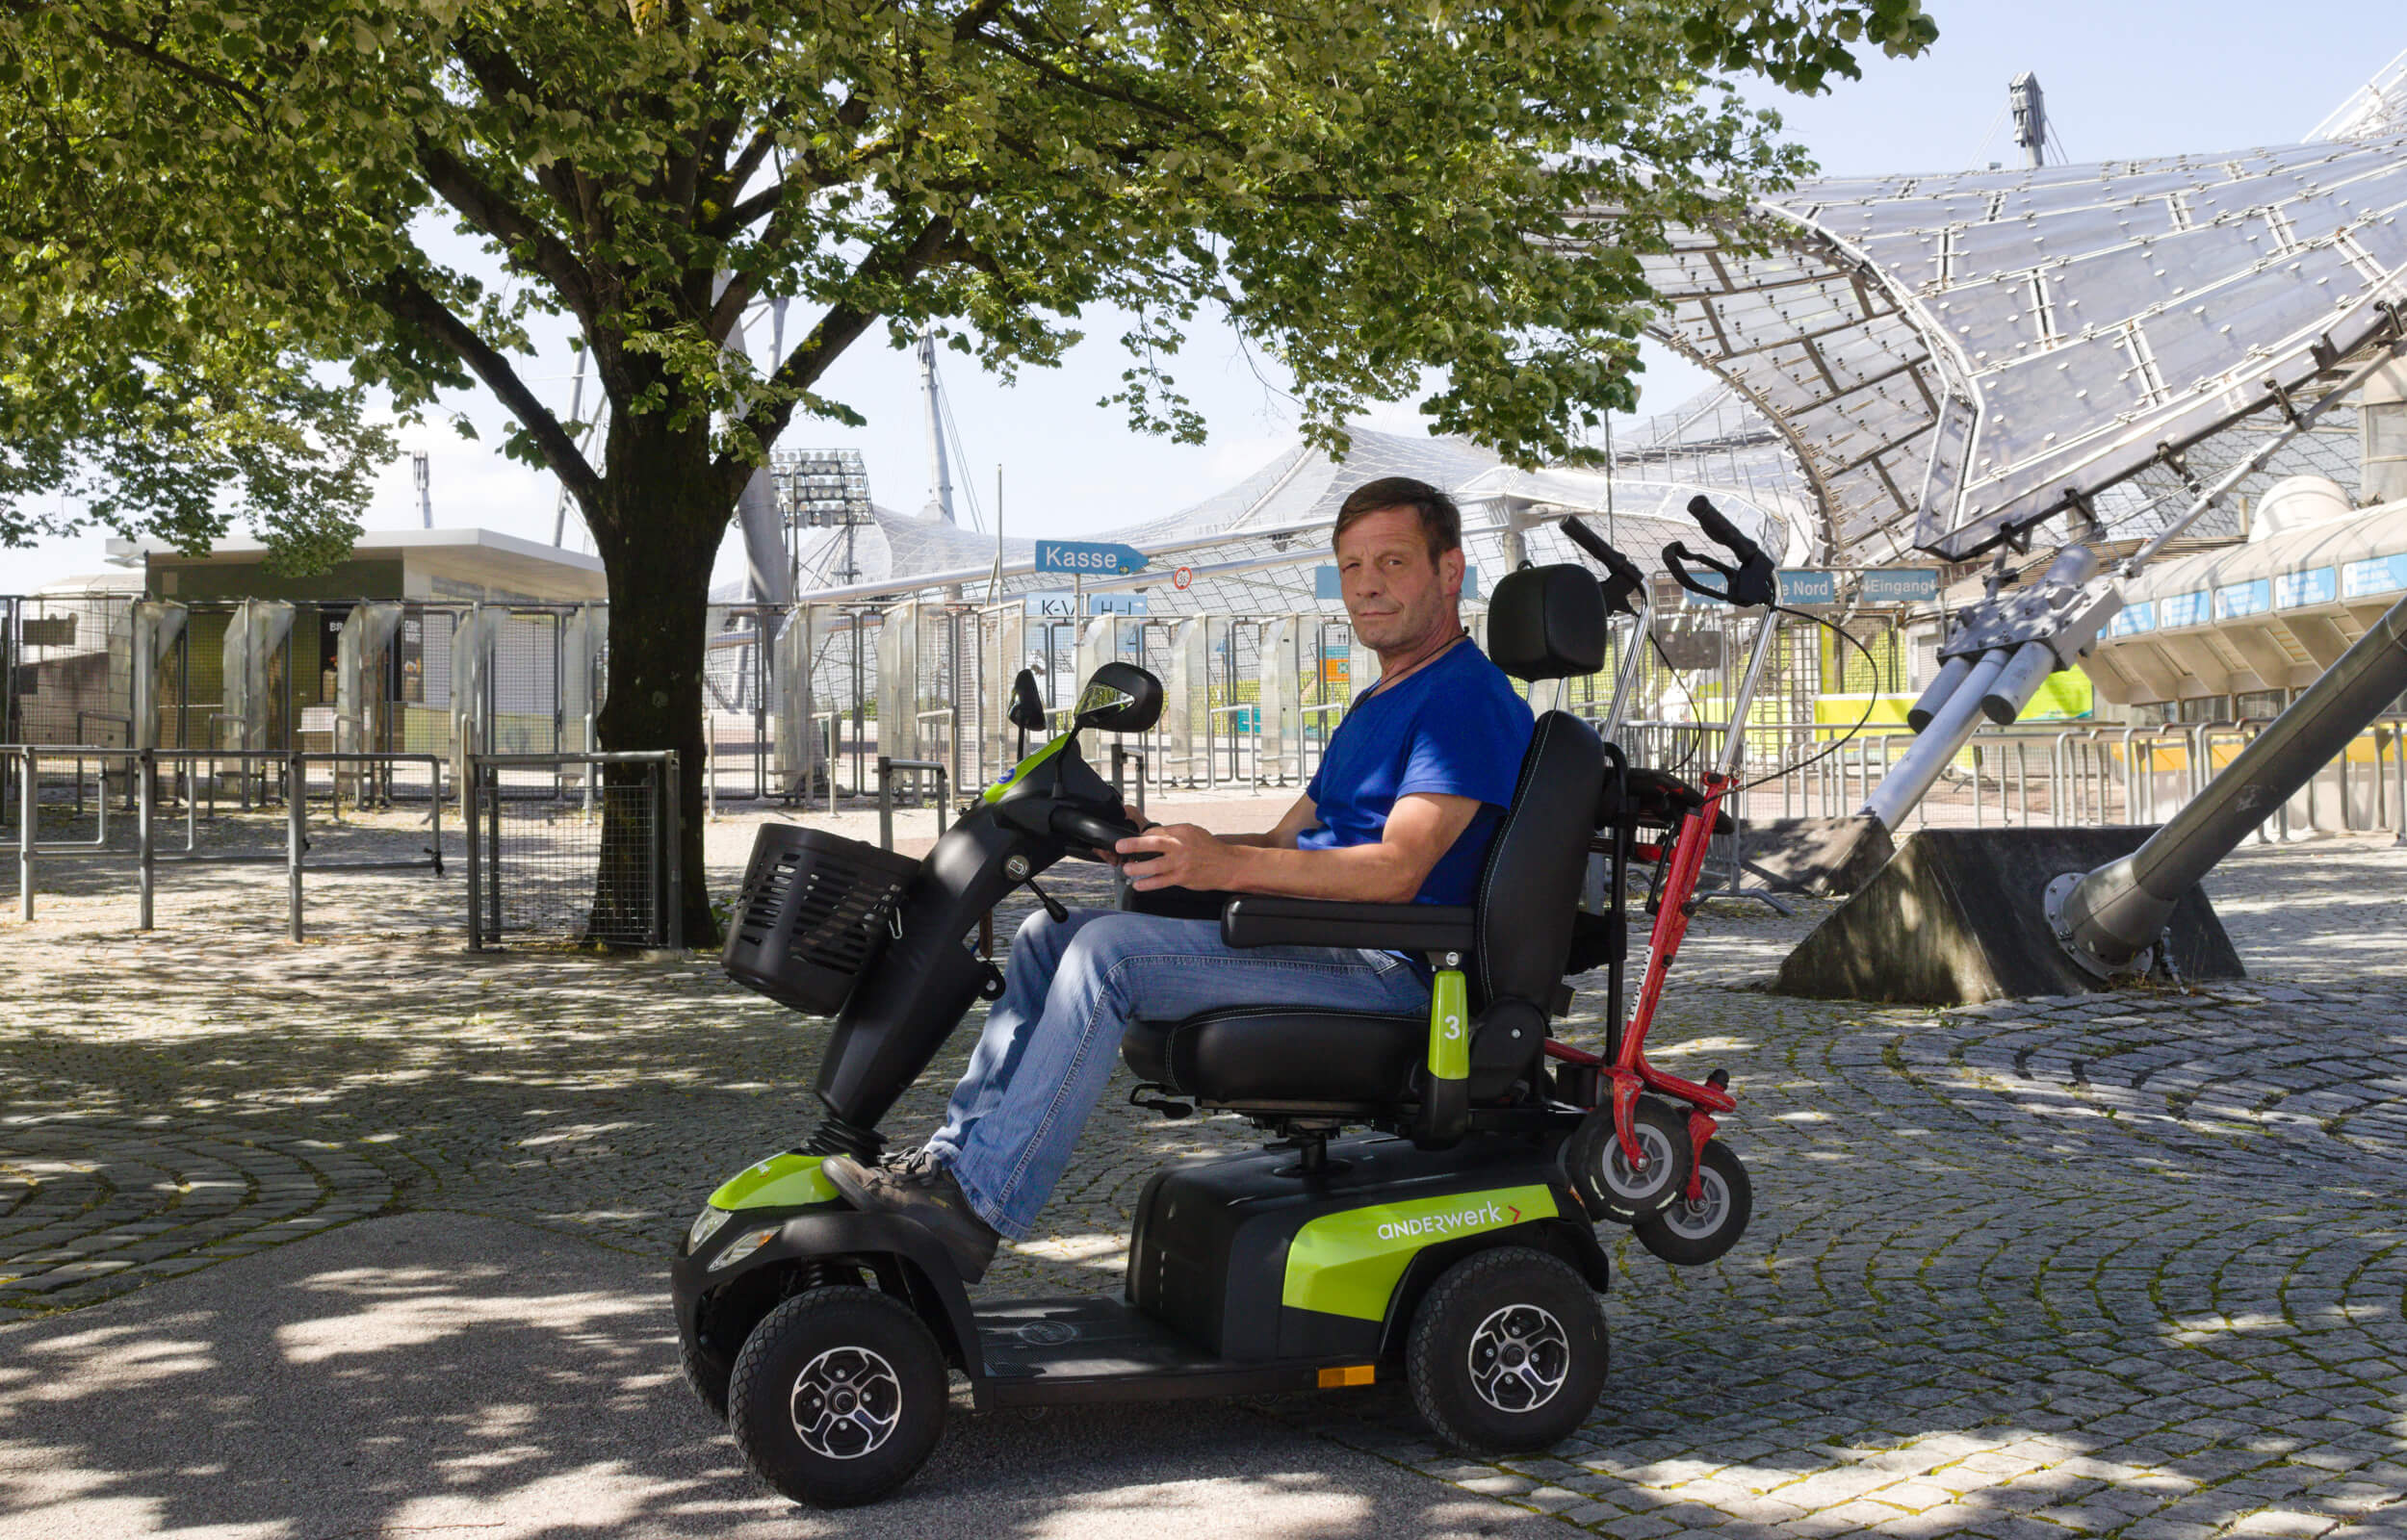 Ein Mann sitzt in einem Elektromobil. Auf dem Elektromobil steht "anderwerk". Im Hintergrund ist das Zeltdach des Olympiaparks